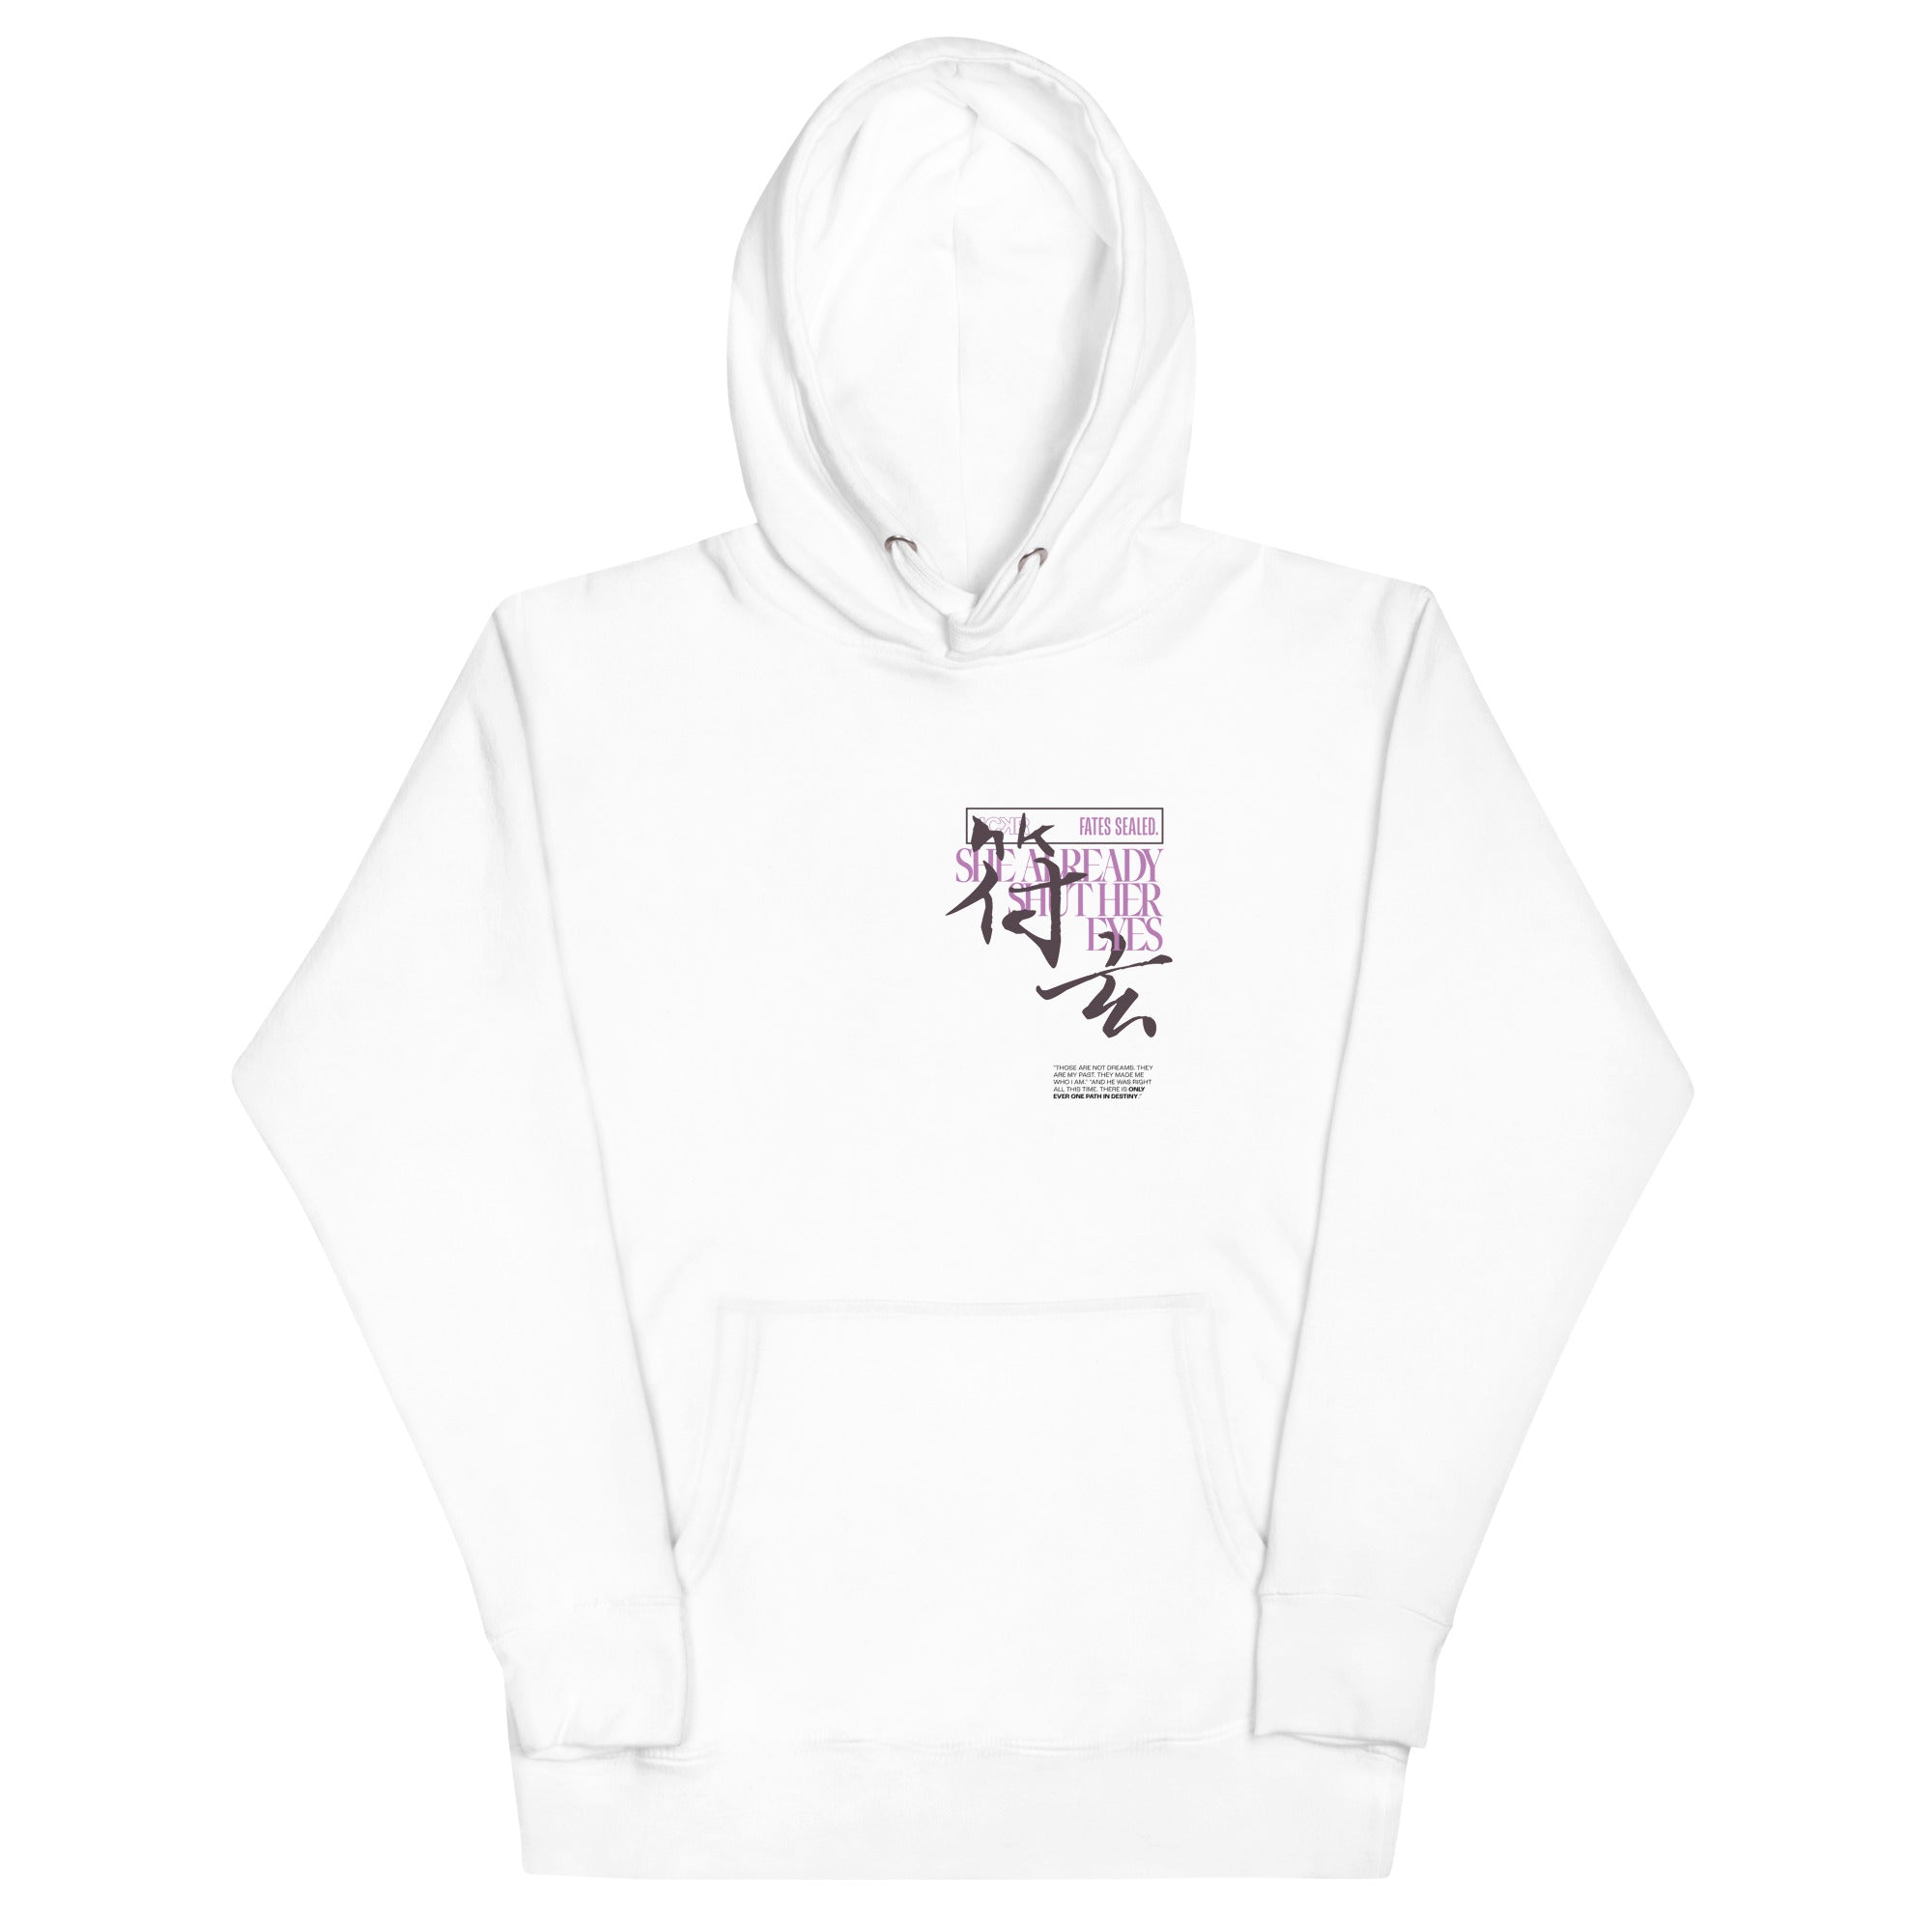 EYES CLOSED • hoodie - Jackler - anime-inspired streetwear - anime clothing